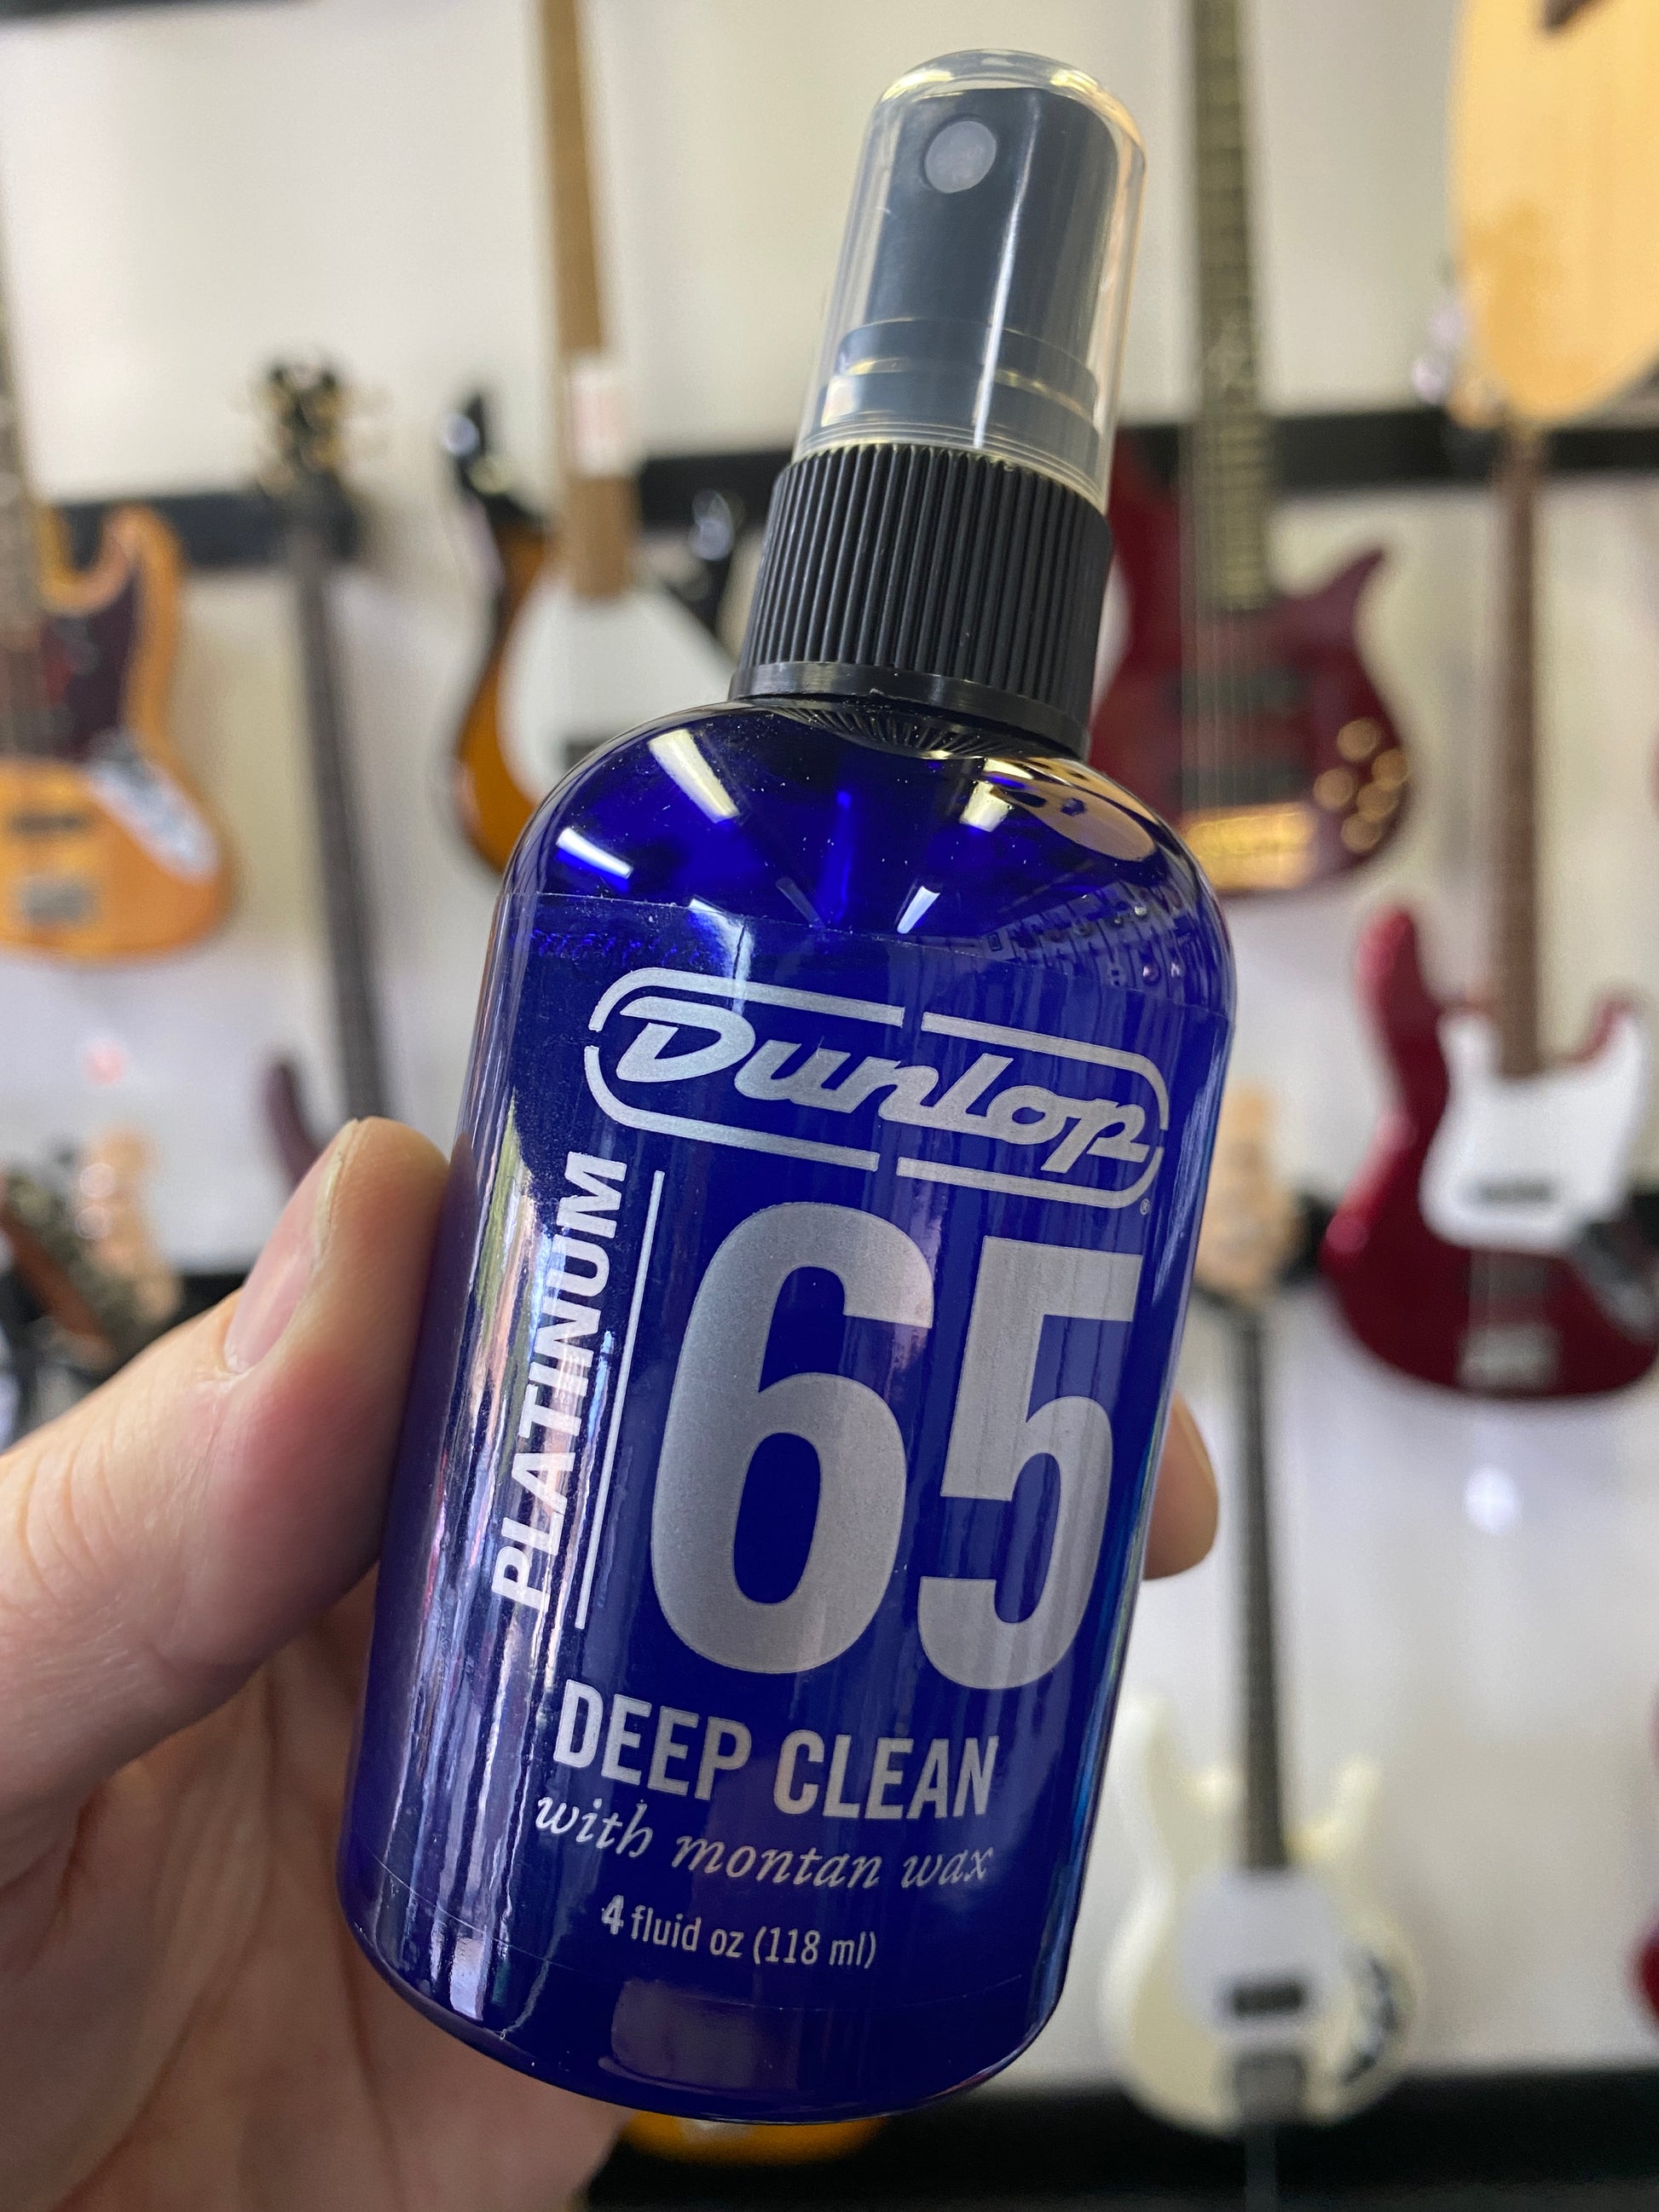 Dunlop Platinum 65 Deep Clean